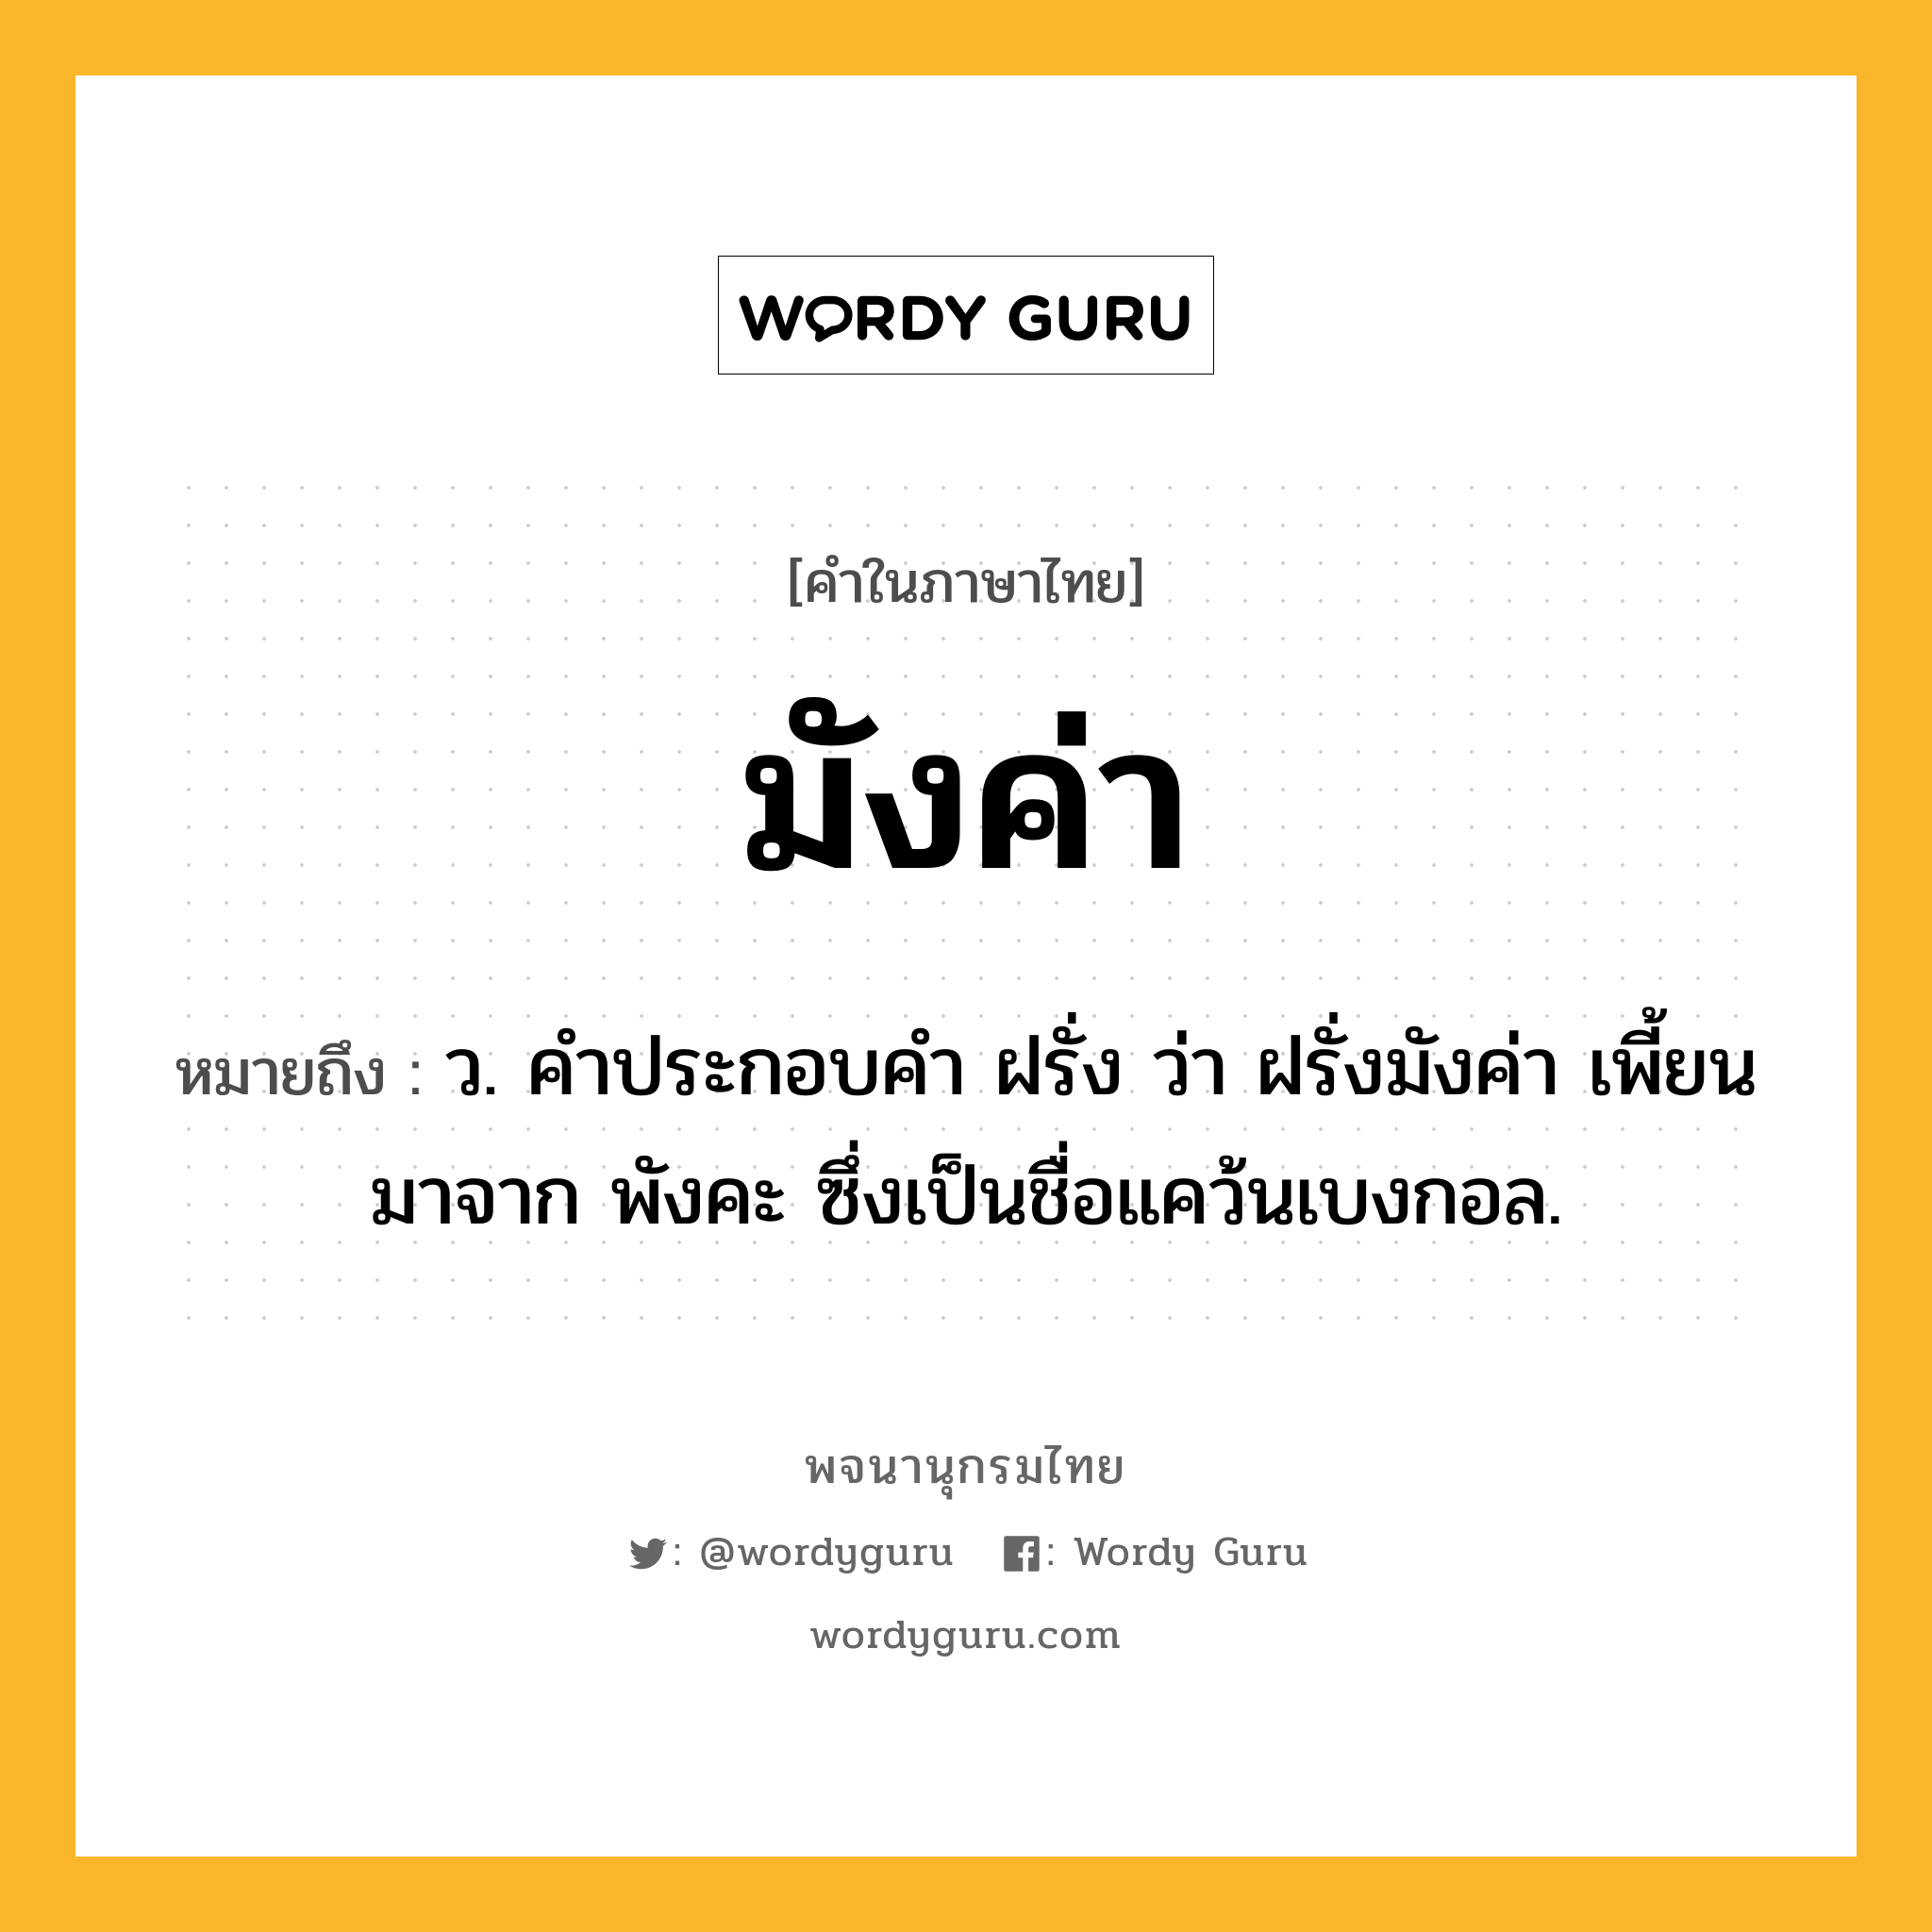 มังค่า หมายถึงอะไร?, คำในภาษาไทย มังค่า หมายถึง ว. คําประกอบคํา ฝรั่ง ว่า ฝรั่งมังค่า เพี้ยนมาจาก พังคะ ซึ่งเป็นชื่อแคว้นเบงกอล.